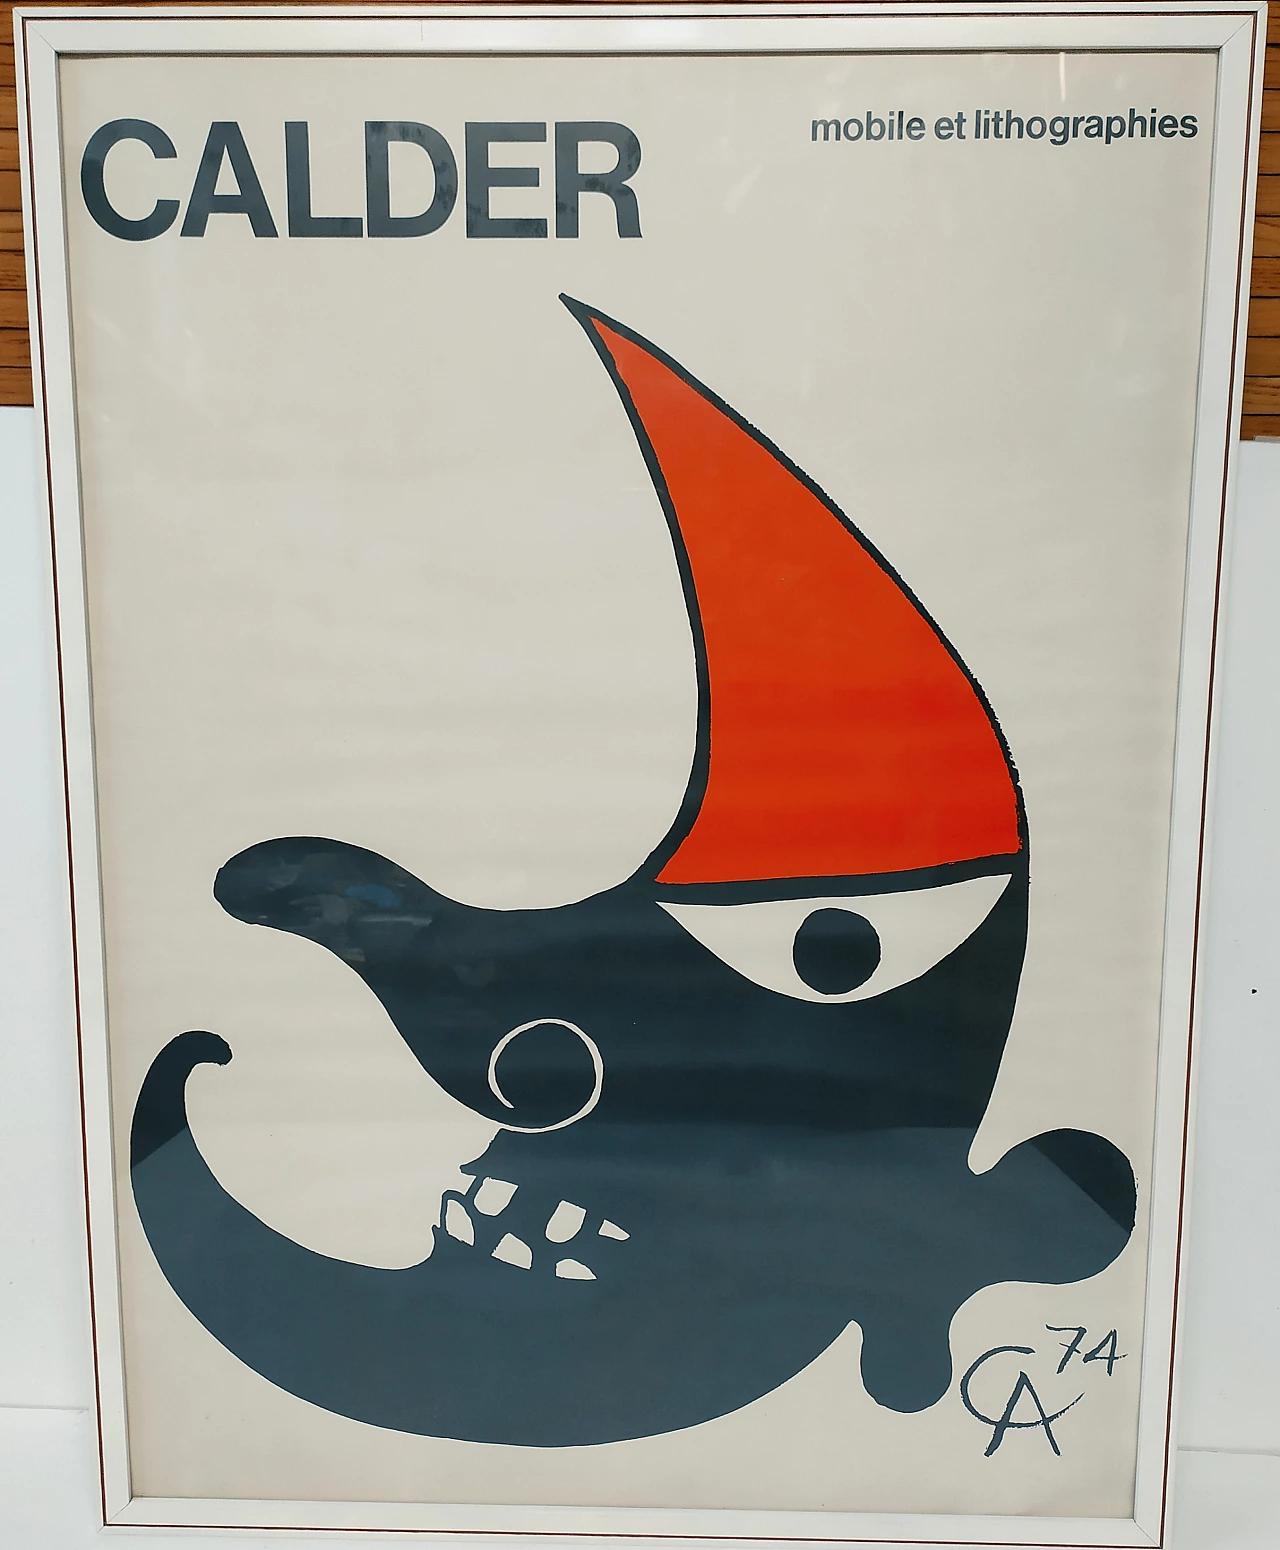 Alexander Calder, Mobile et Lithographies, litografia, 1974 1